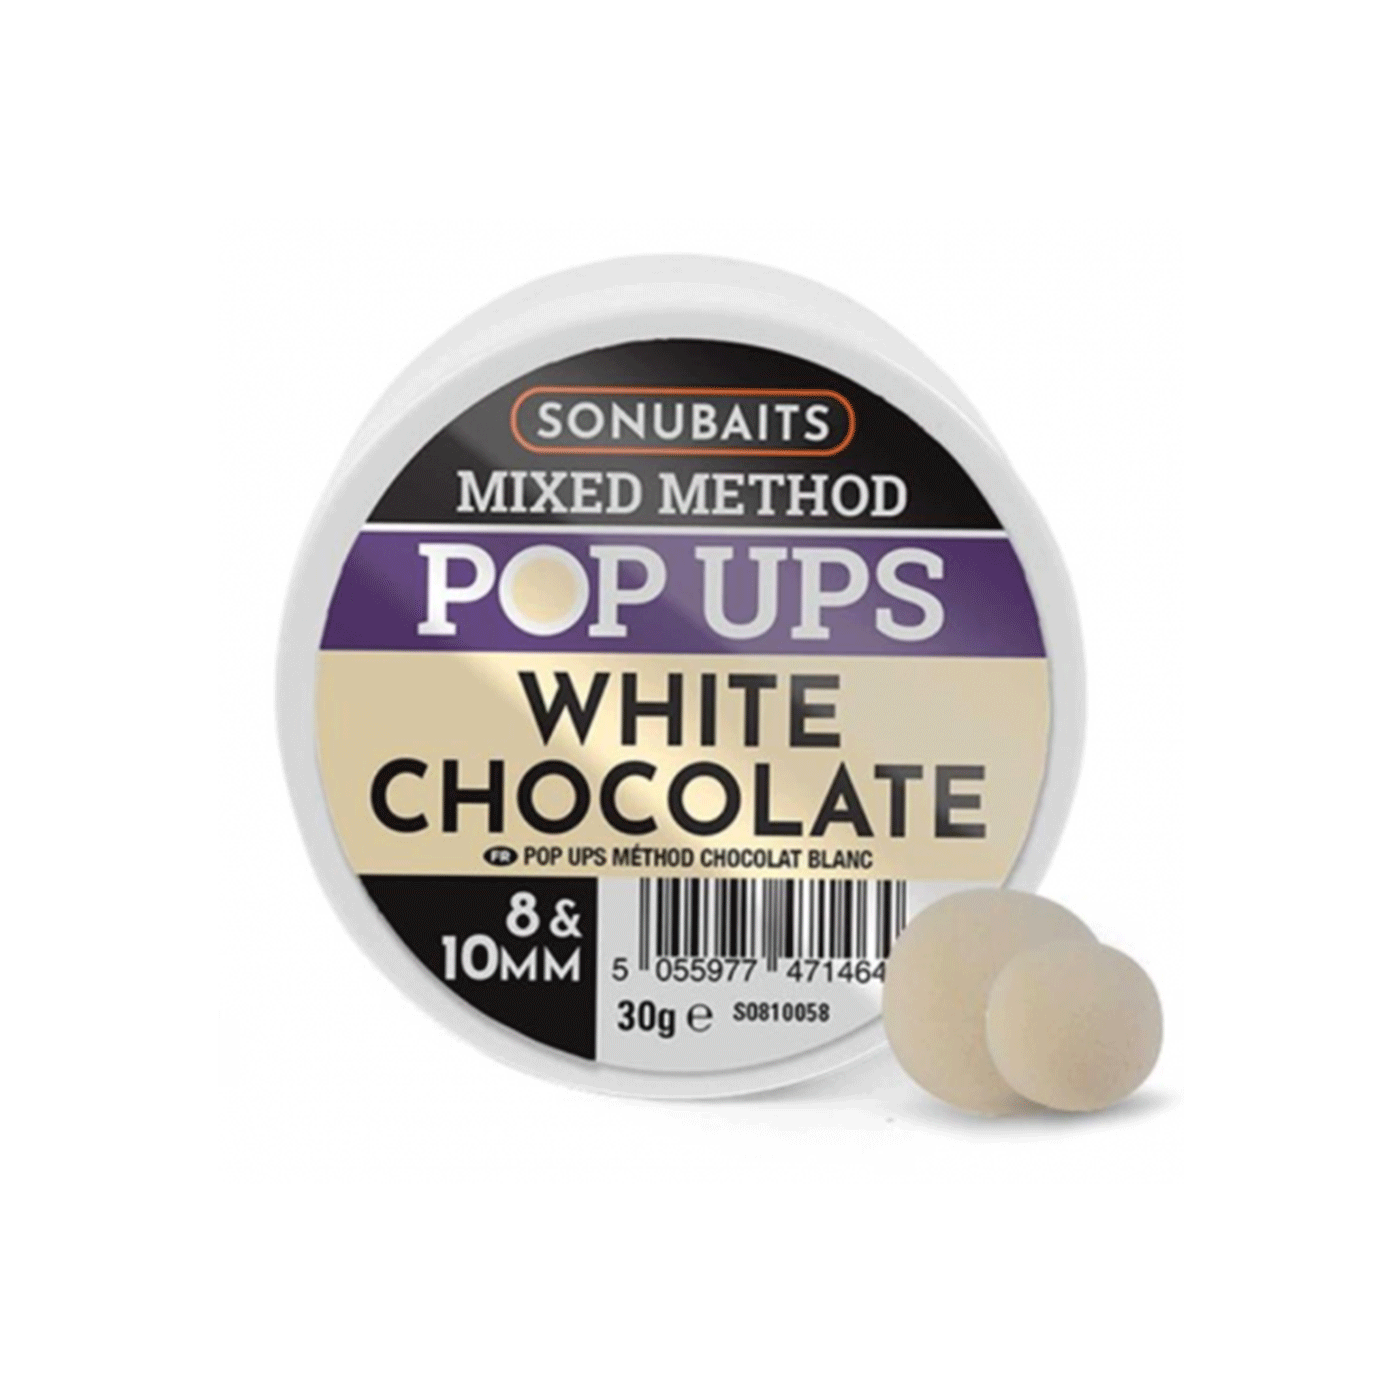 SONUBAITS - MIXED METHOD POP UPS WHITE CHOCOLATE 8 & 10MM 30g